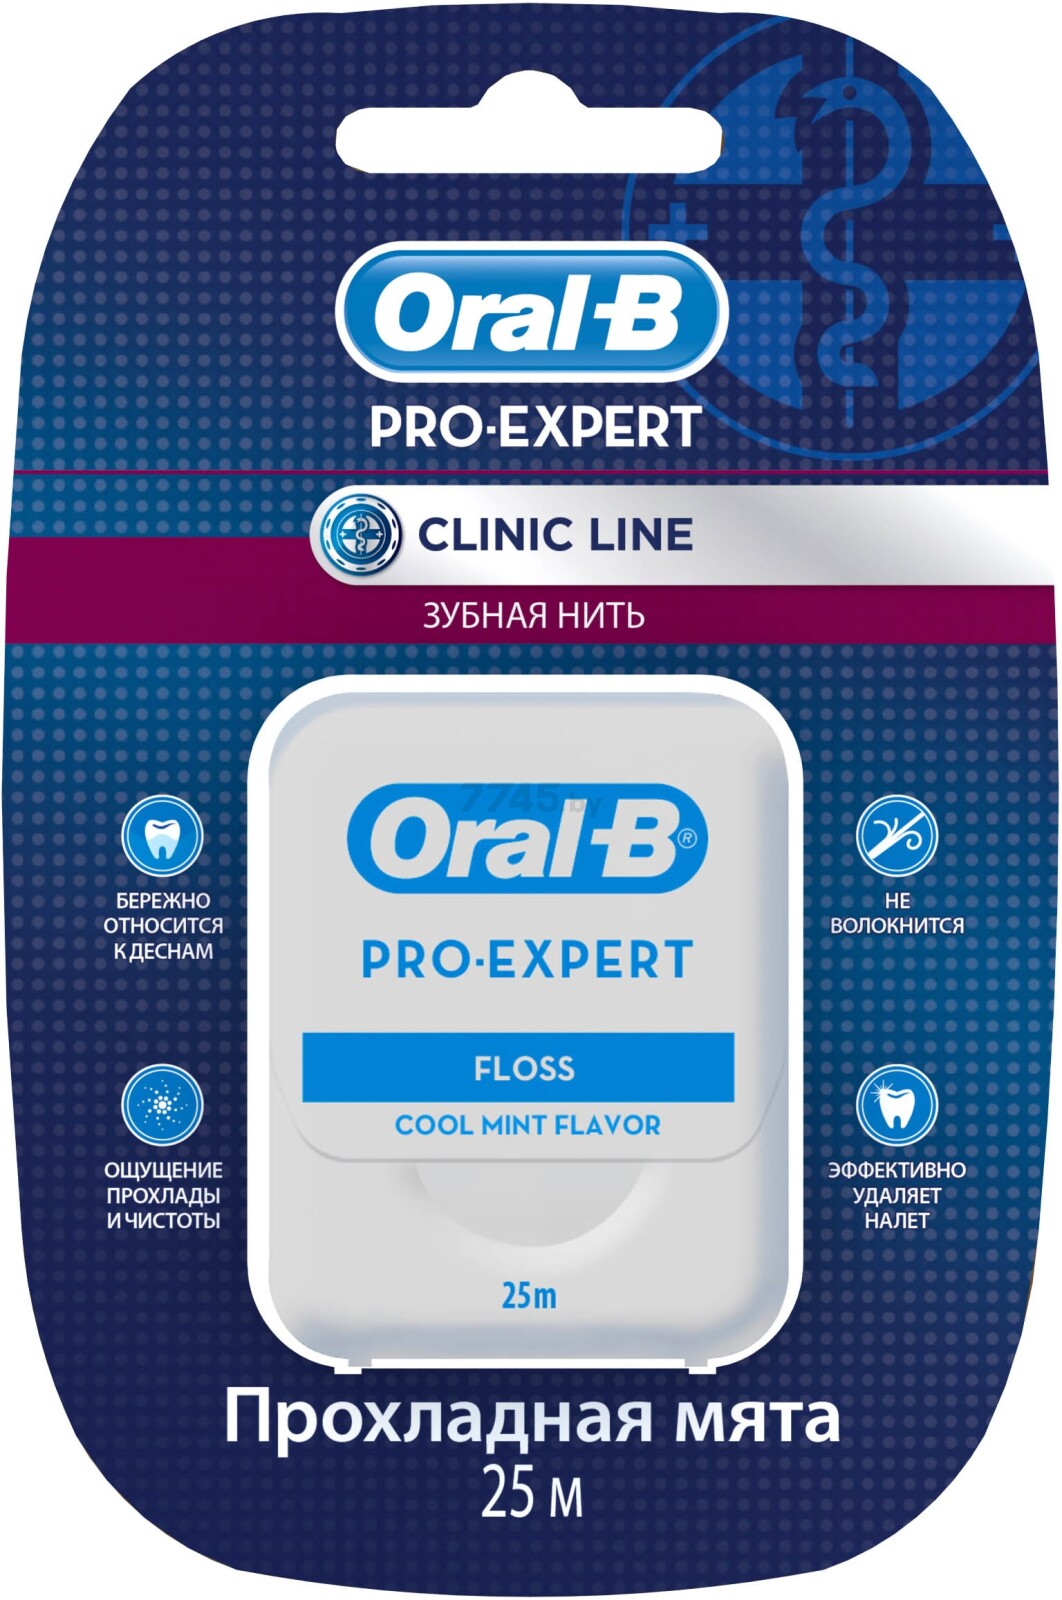 Зубная нить ORAL-B Pro-Expert Clinic Line прохладная мята 25 м (5410076635078)